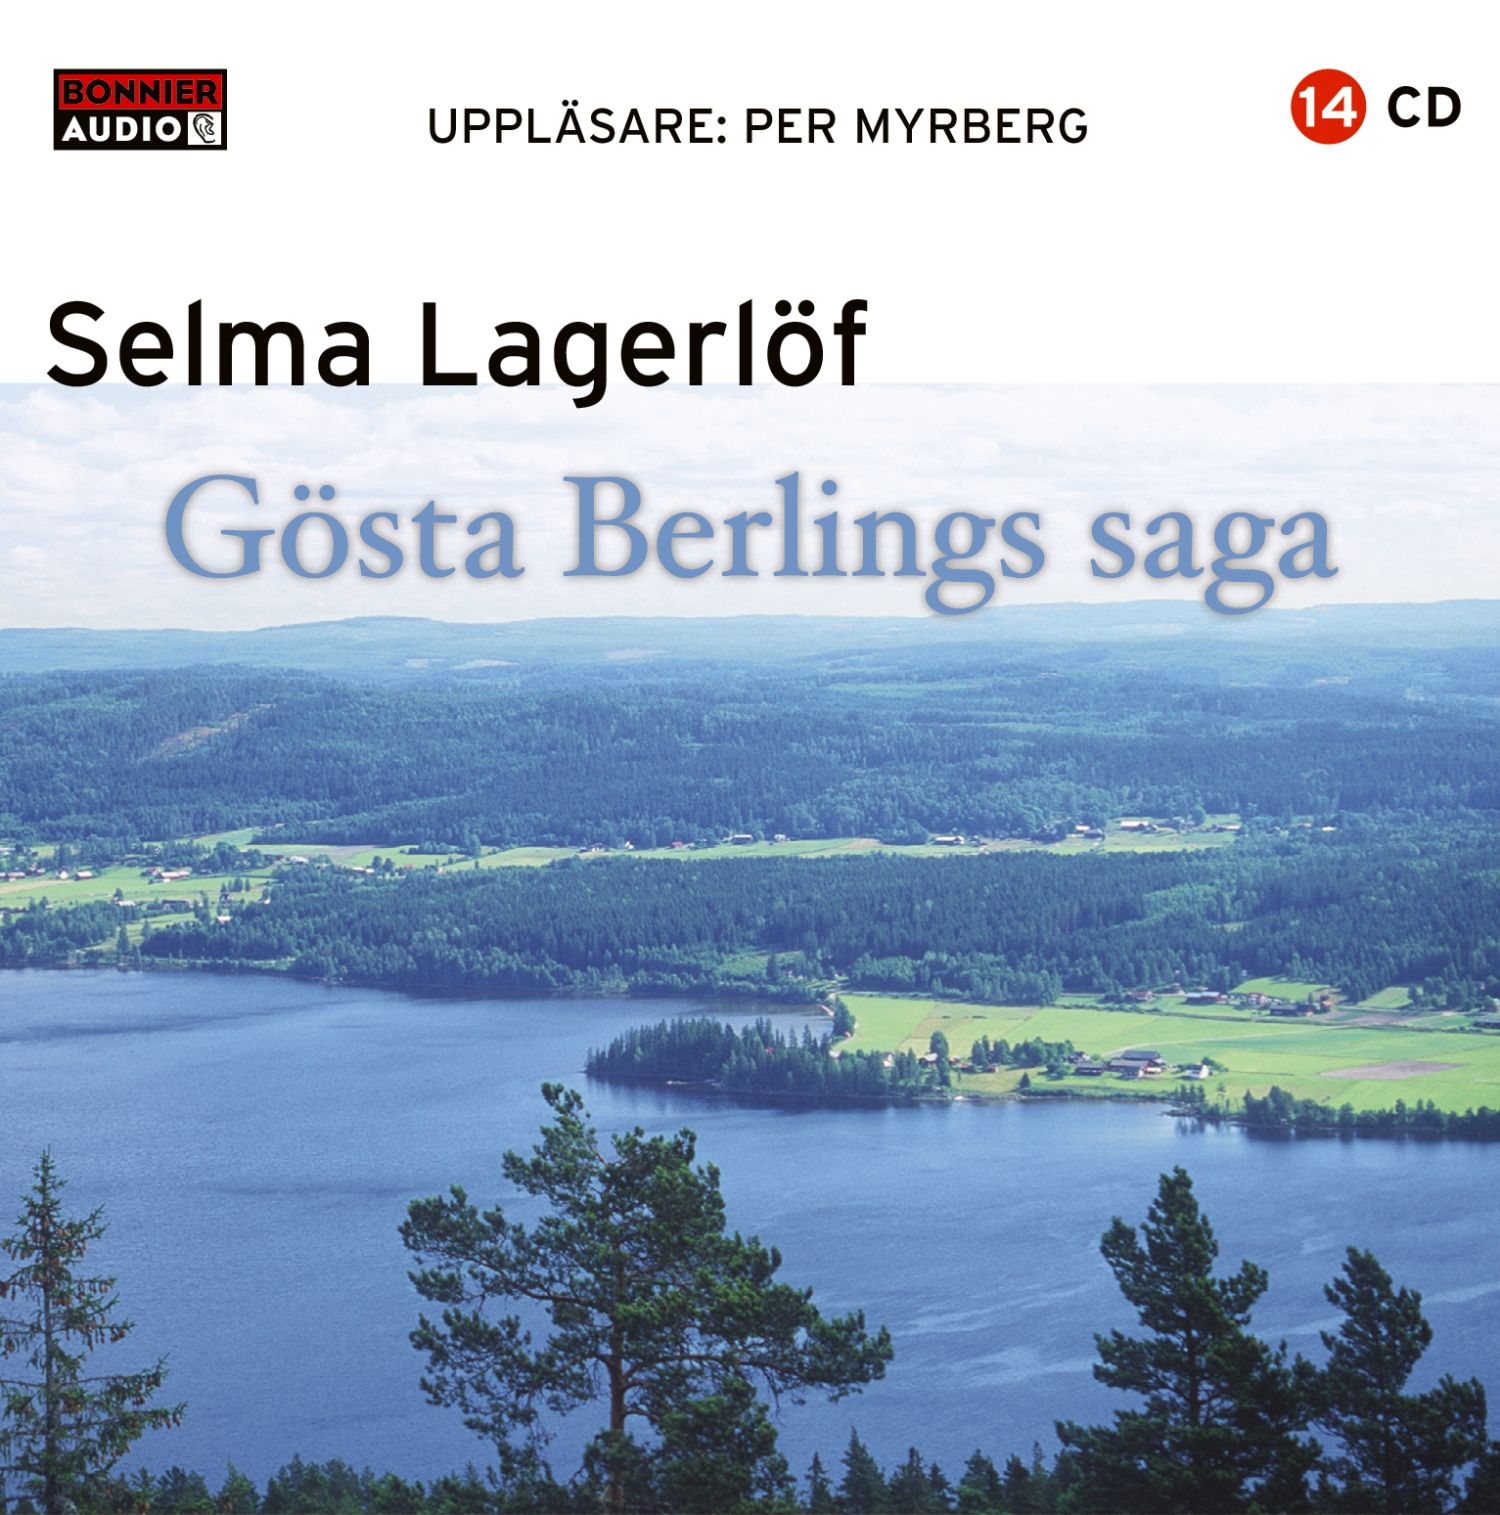 Gösta Berlings saga, audiobook by Selma Lagerlöf